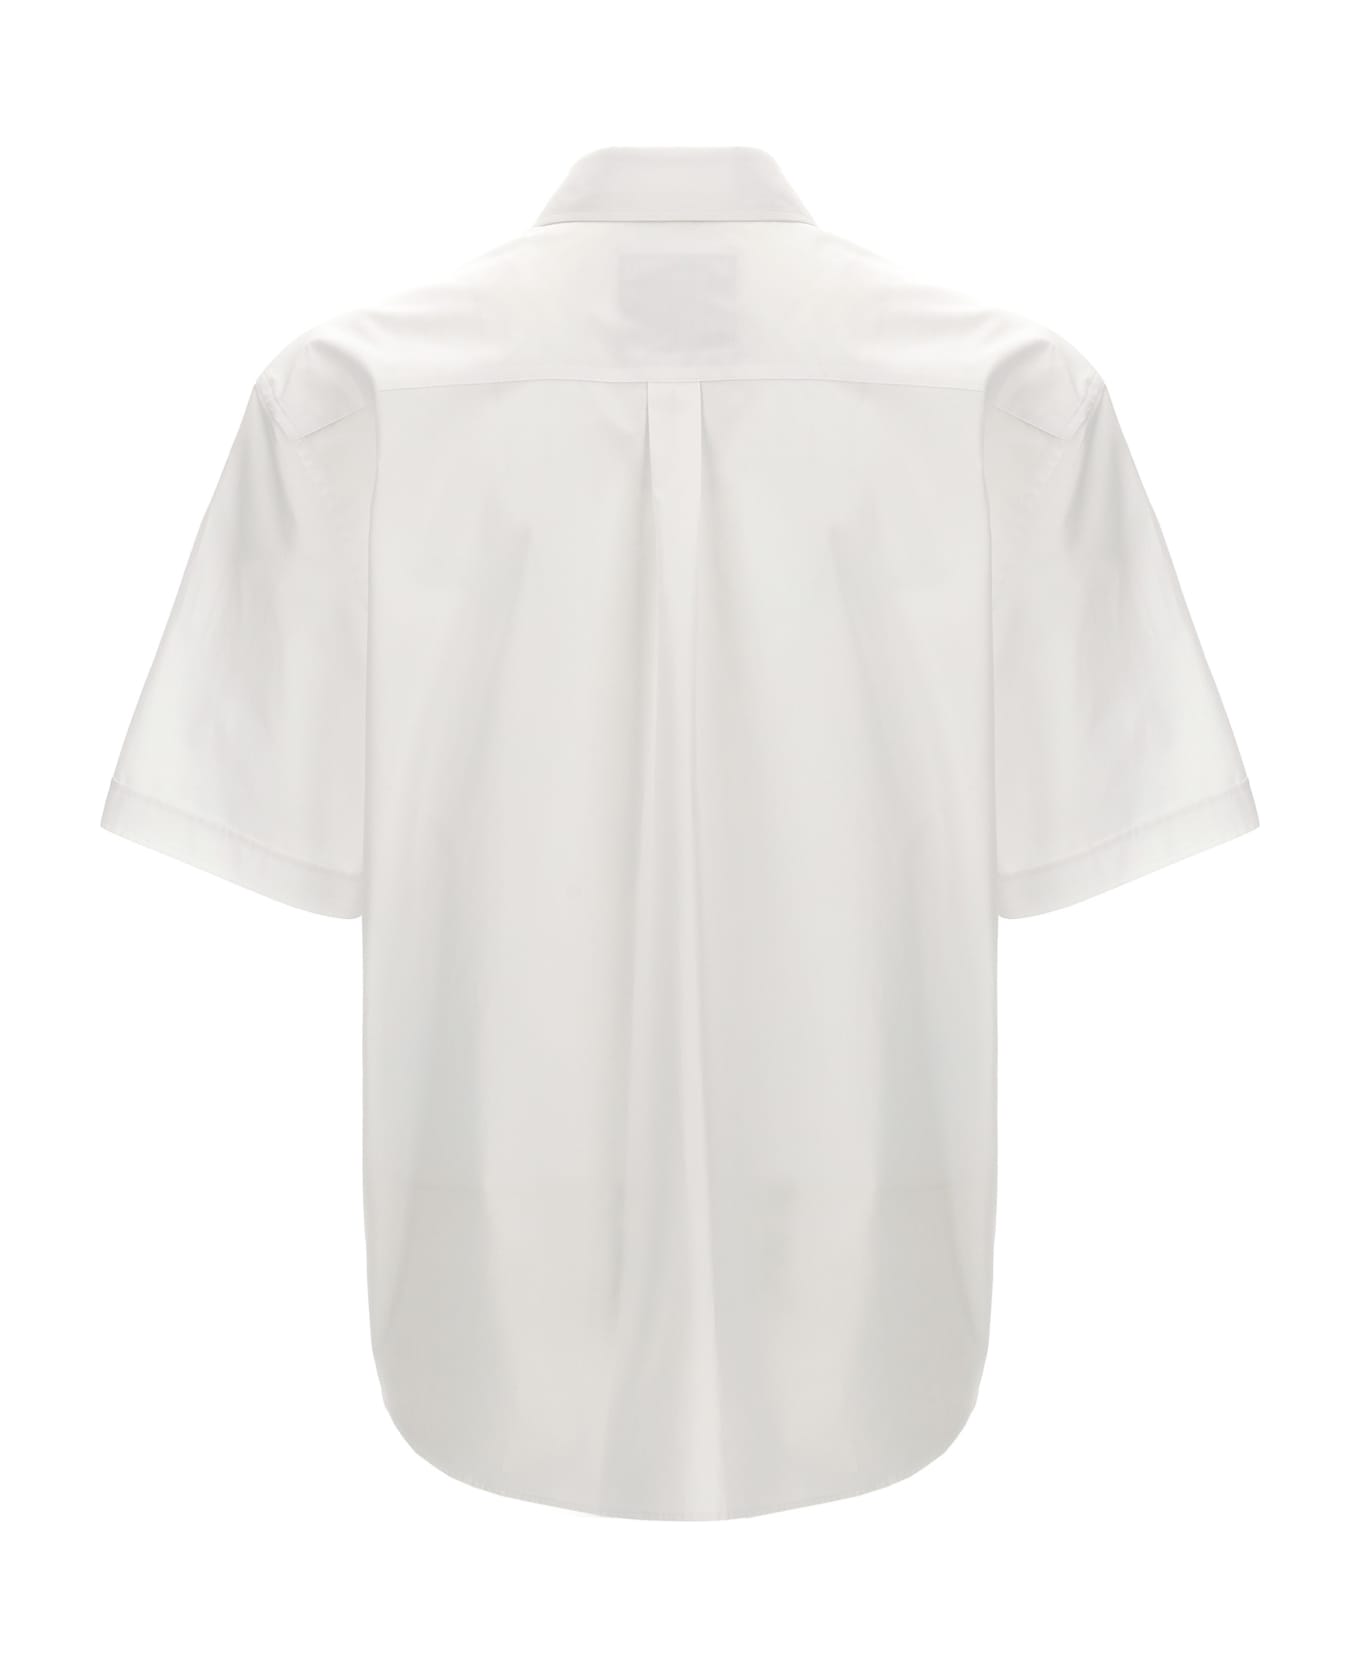 Moschino 'in Love We Trust' Shirt - White